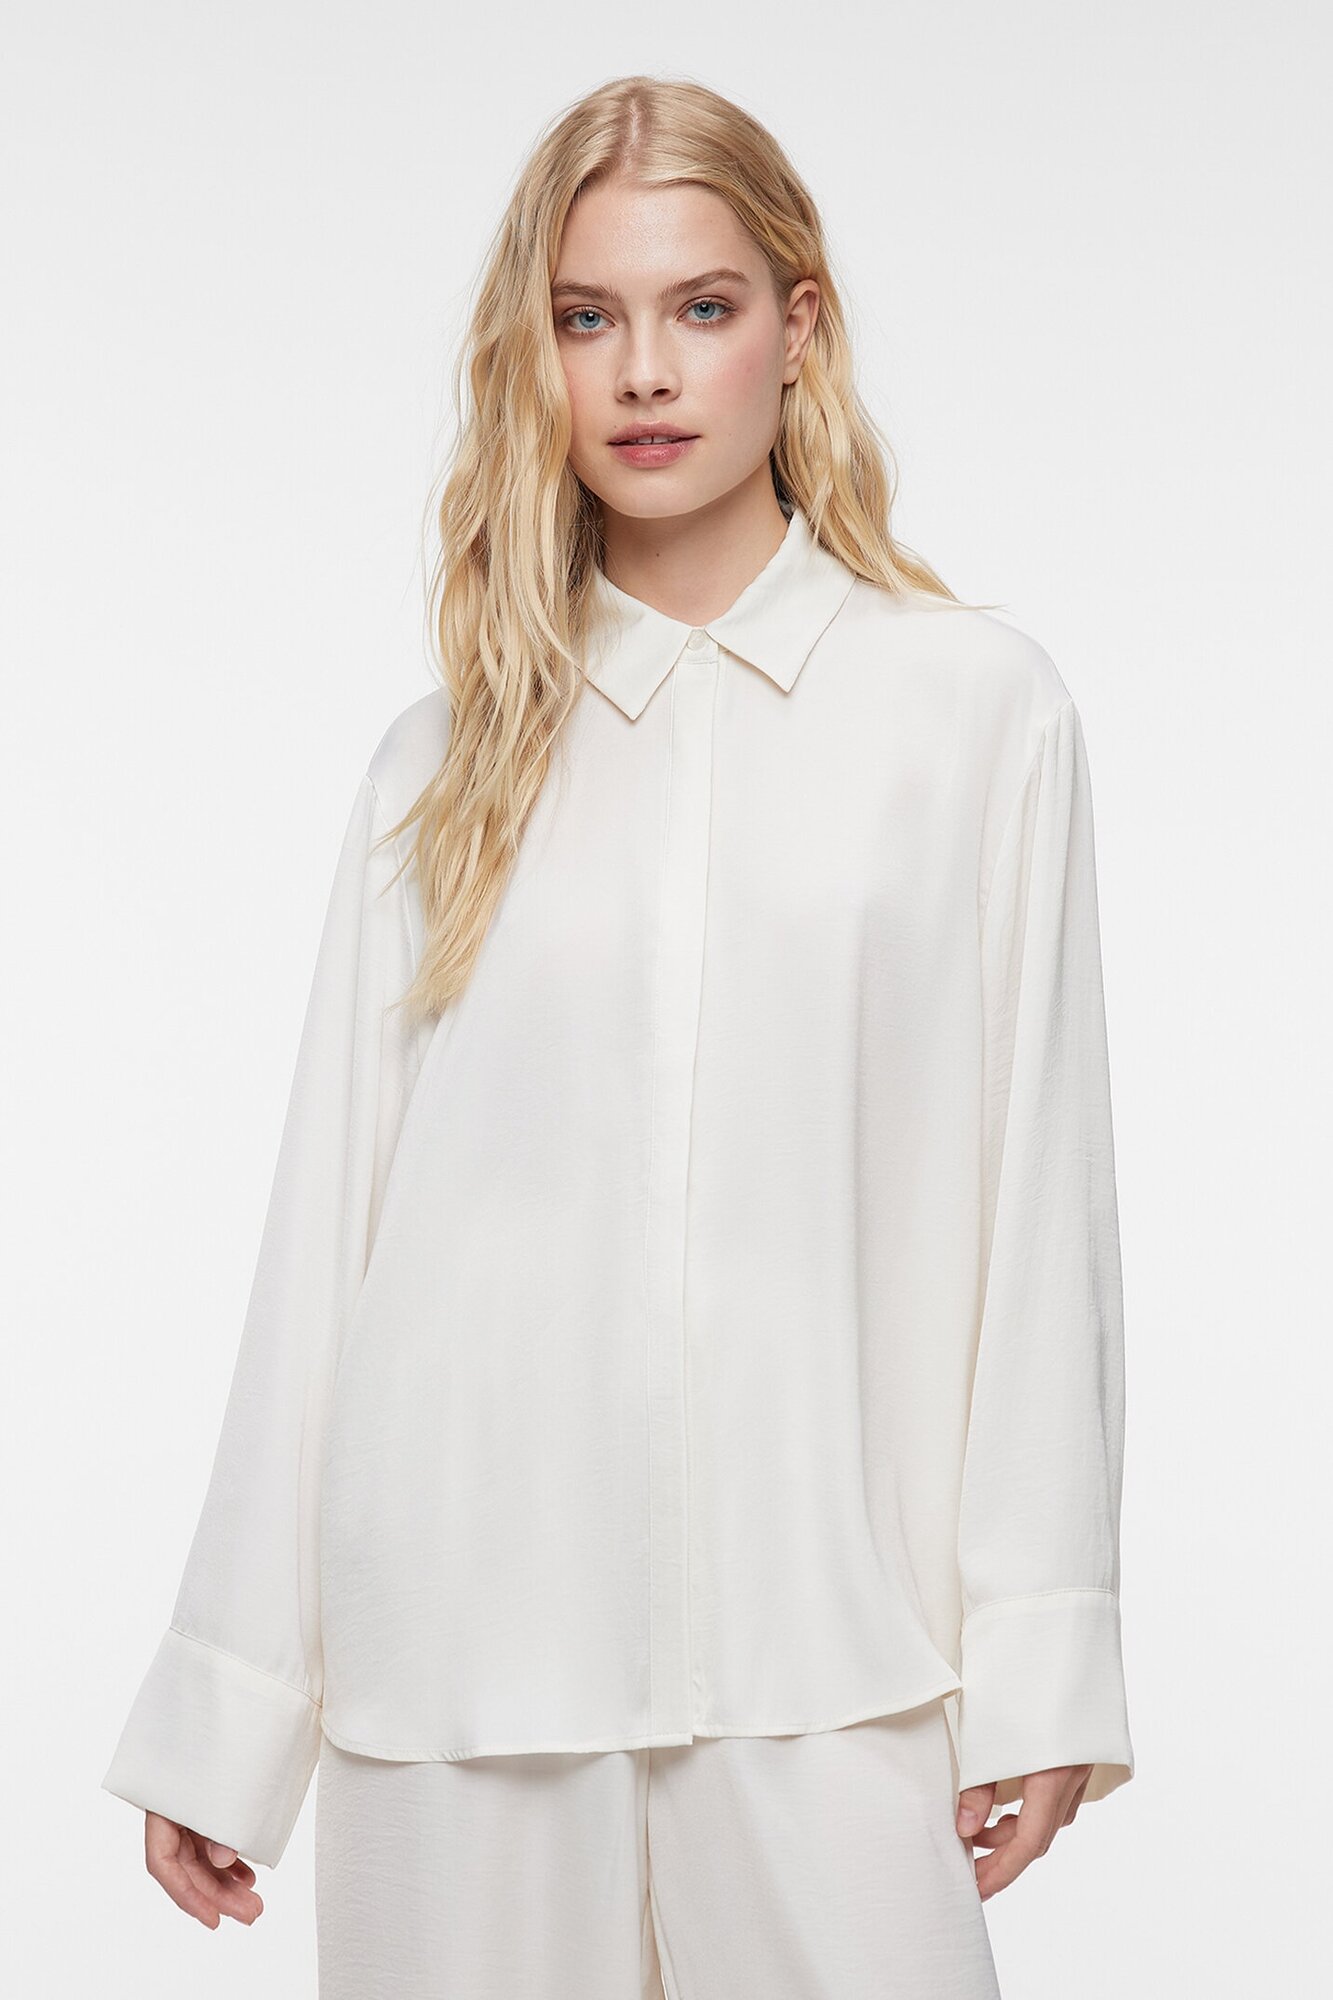 Рубашка oversize домашняя женская Befree Блузка-рубашка oversize домашняя с длинными рукавами 2326425001-60-XS молочный размер XS - фотография № 1